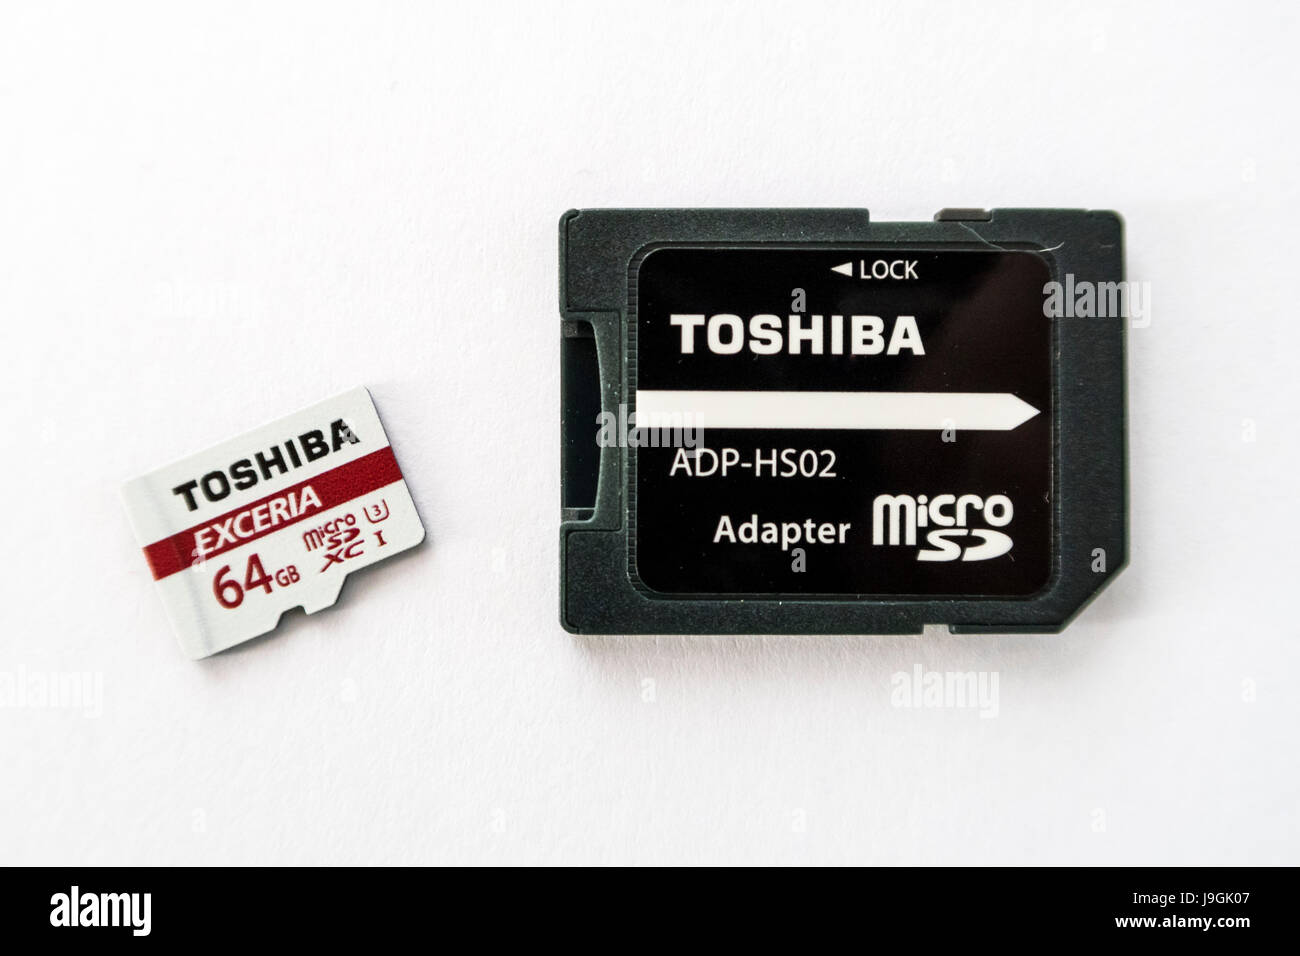 Toshiba Exceria XC tarjeta de memoria microSD con una capacidad de 64 GB y una tarjeta microSD con adaptador de tarjeta SD sobre fondo blanco. Foto de stock